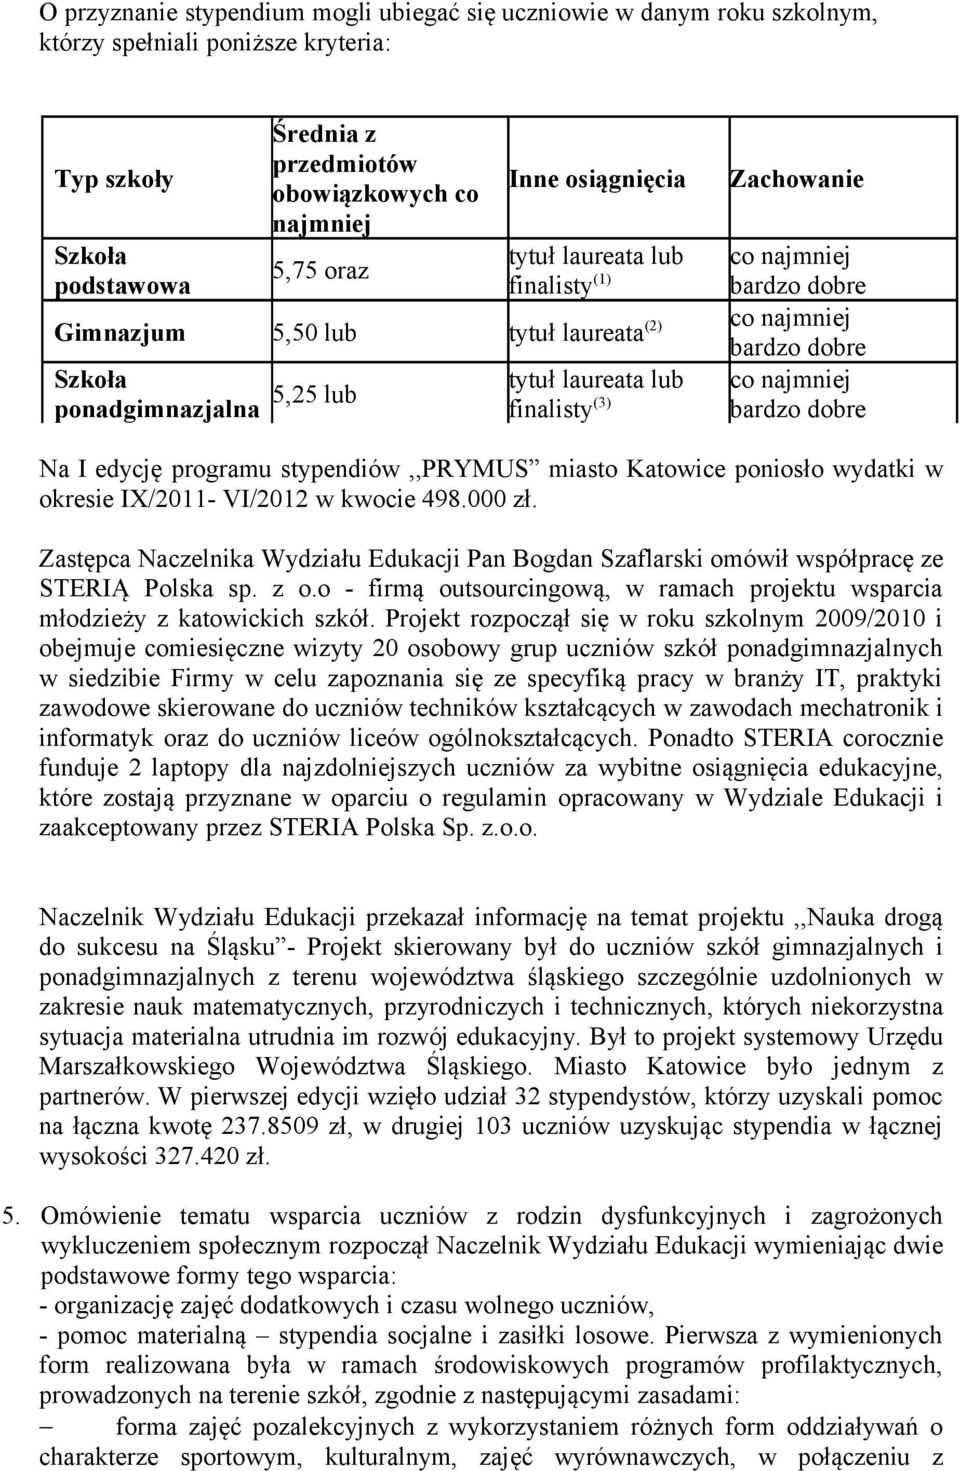 (3) bardzo dobre co najmniej bardzo dobre Na I edycję programu stypendiów,,prymus miasto Katowice poniosło wydatki w okresie IX/2011- VI/2012 w kwocie 498.000 zł.